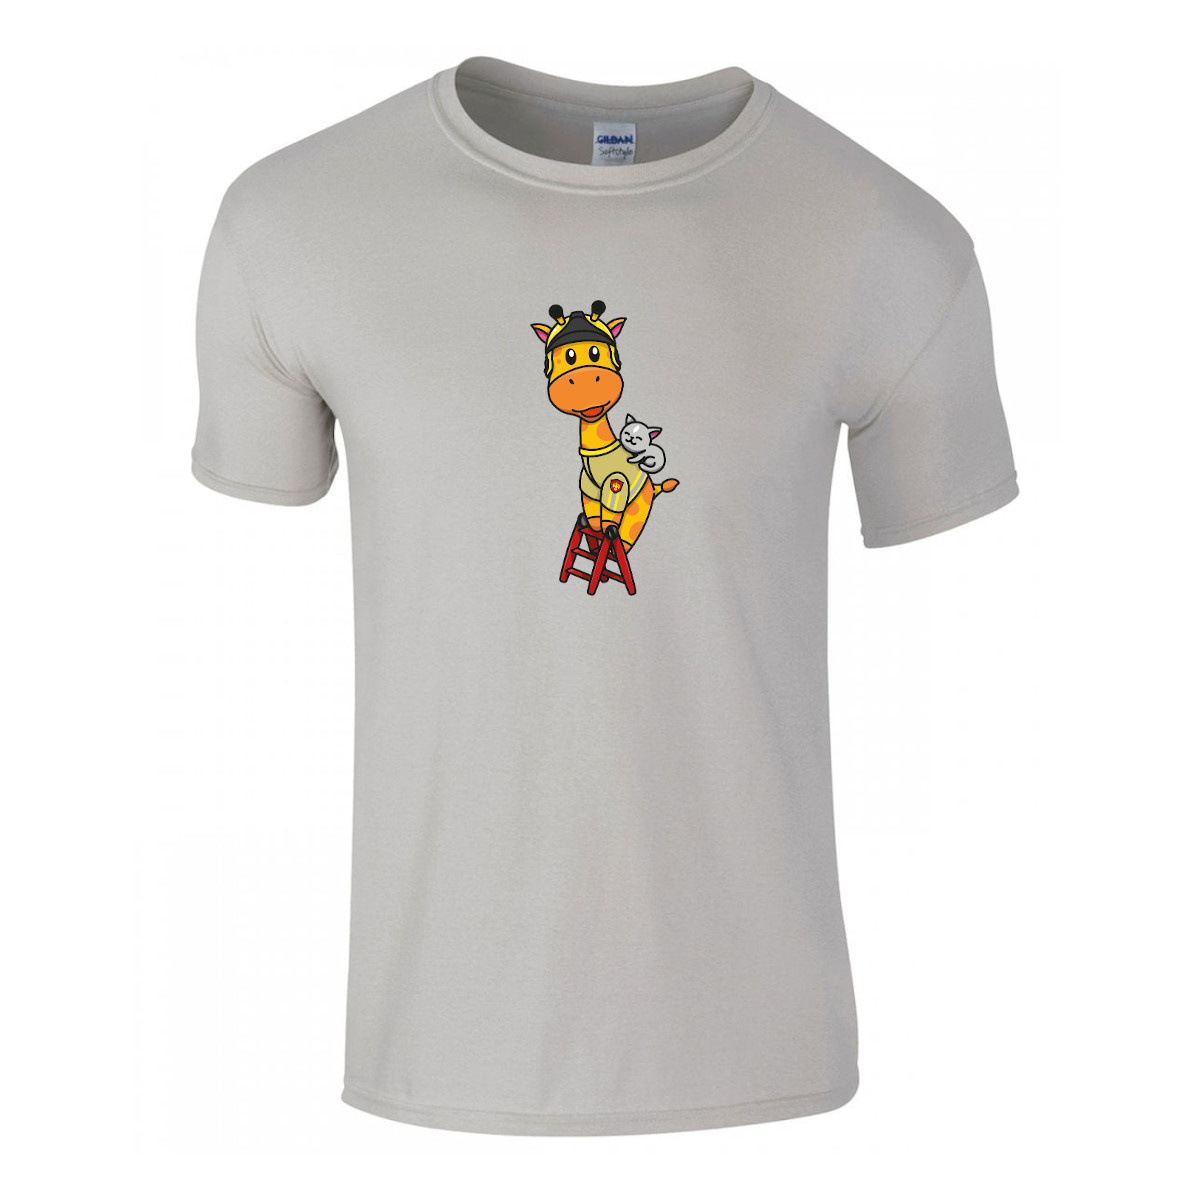 Kinder T-shirt brandweer giraffe brandweer cadeau